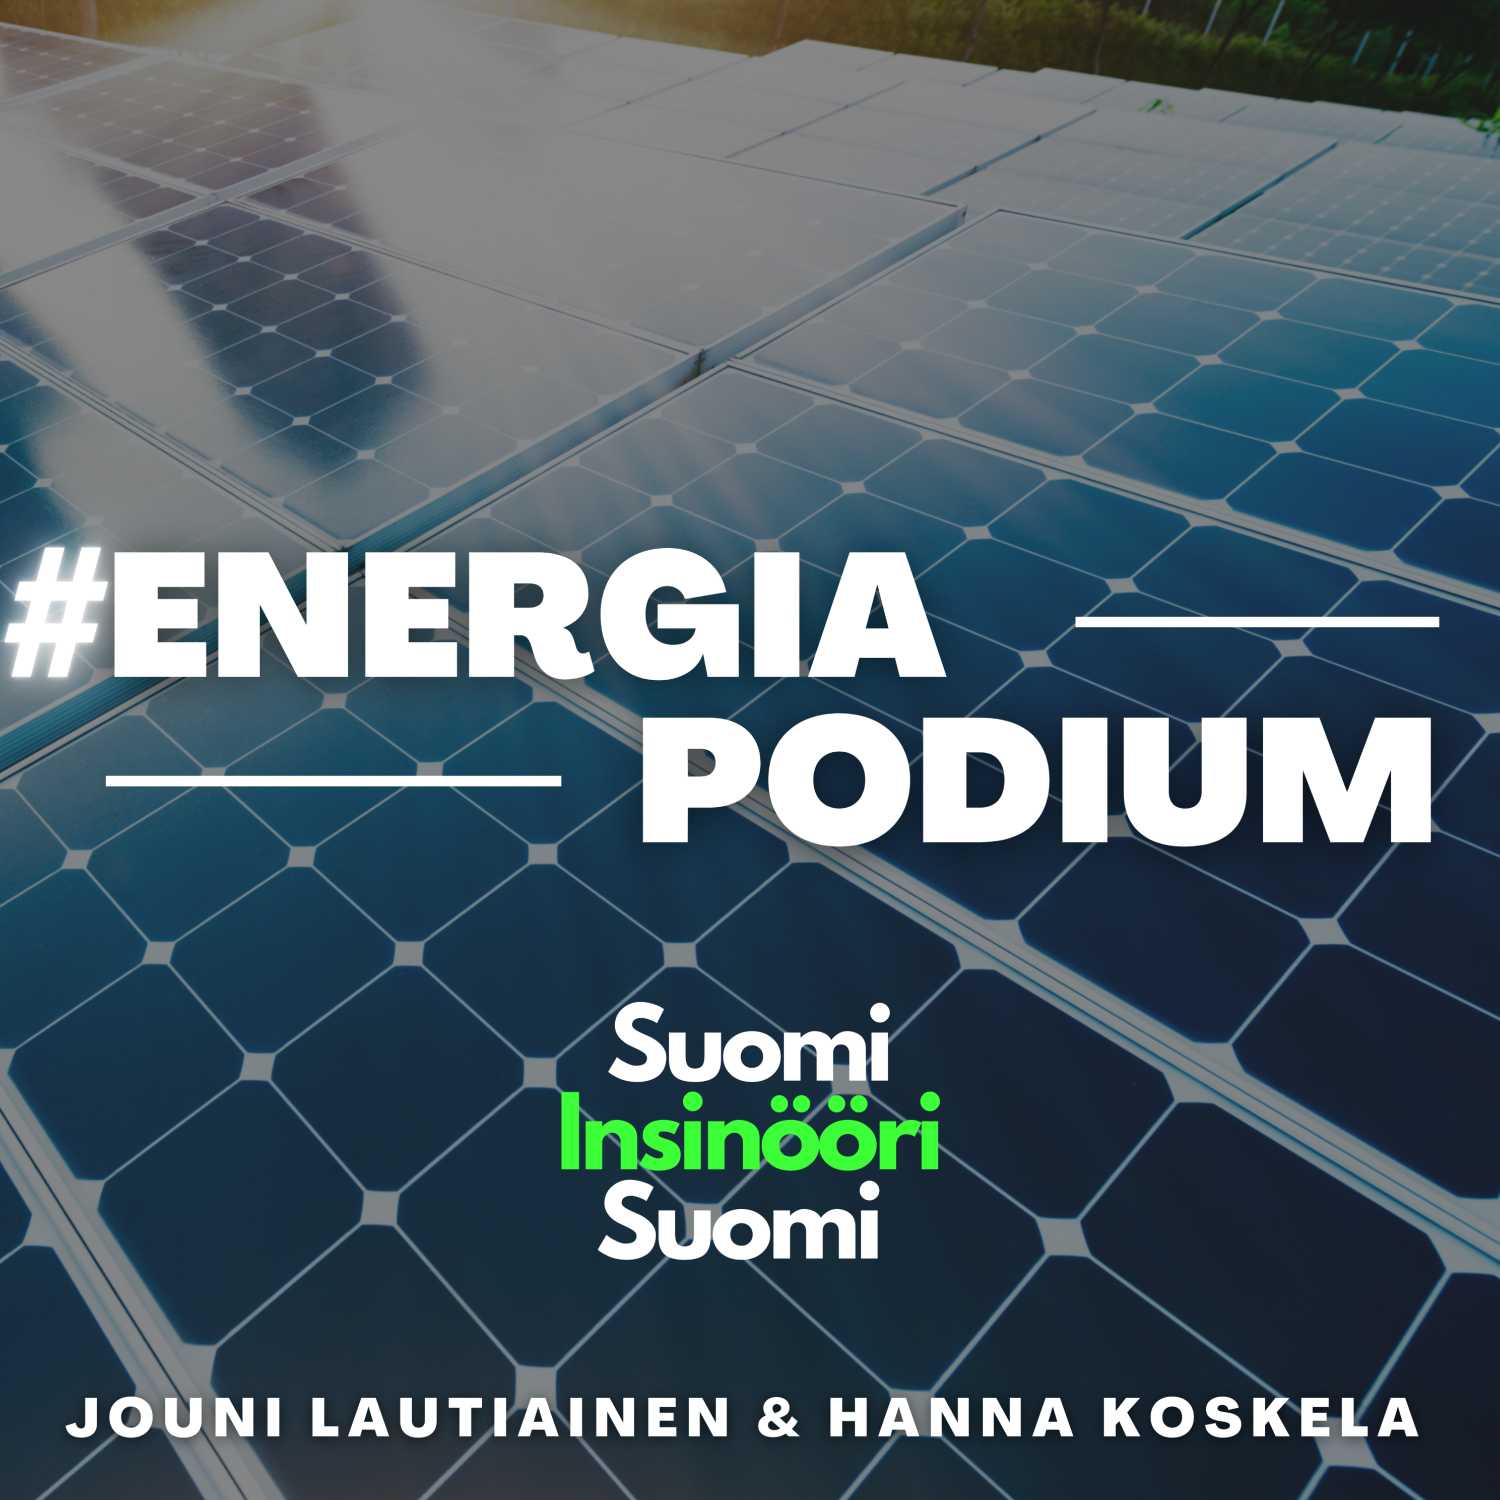 10. Energian hinta ja tuottaminen – Vieraana Lahti Energian Asiakkuuspäällikkö Jarmo Virtanen #Energiapodium